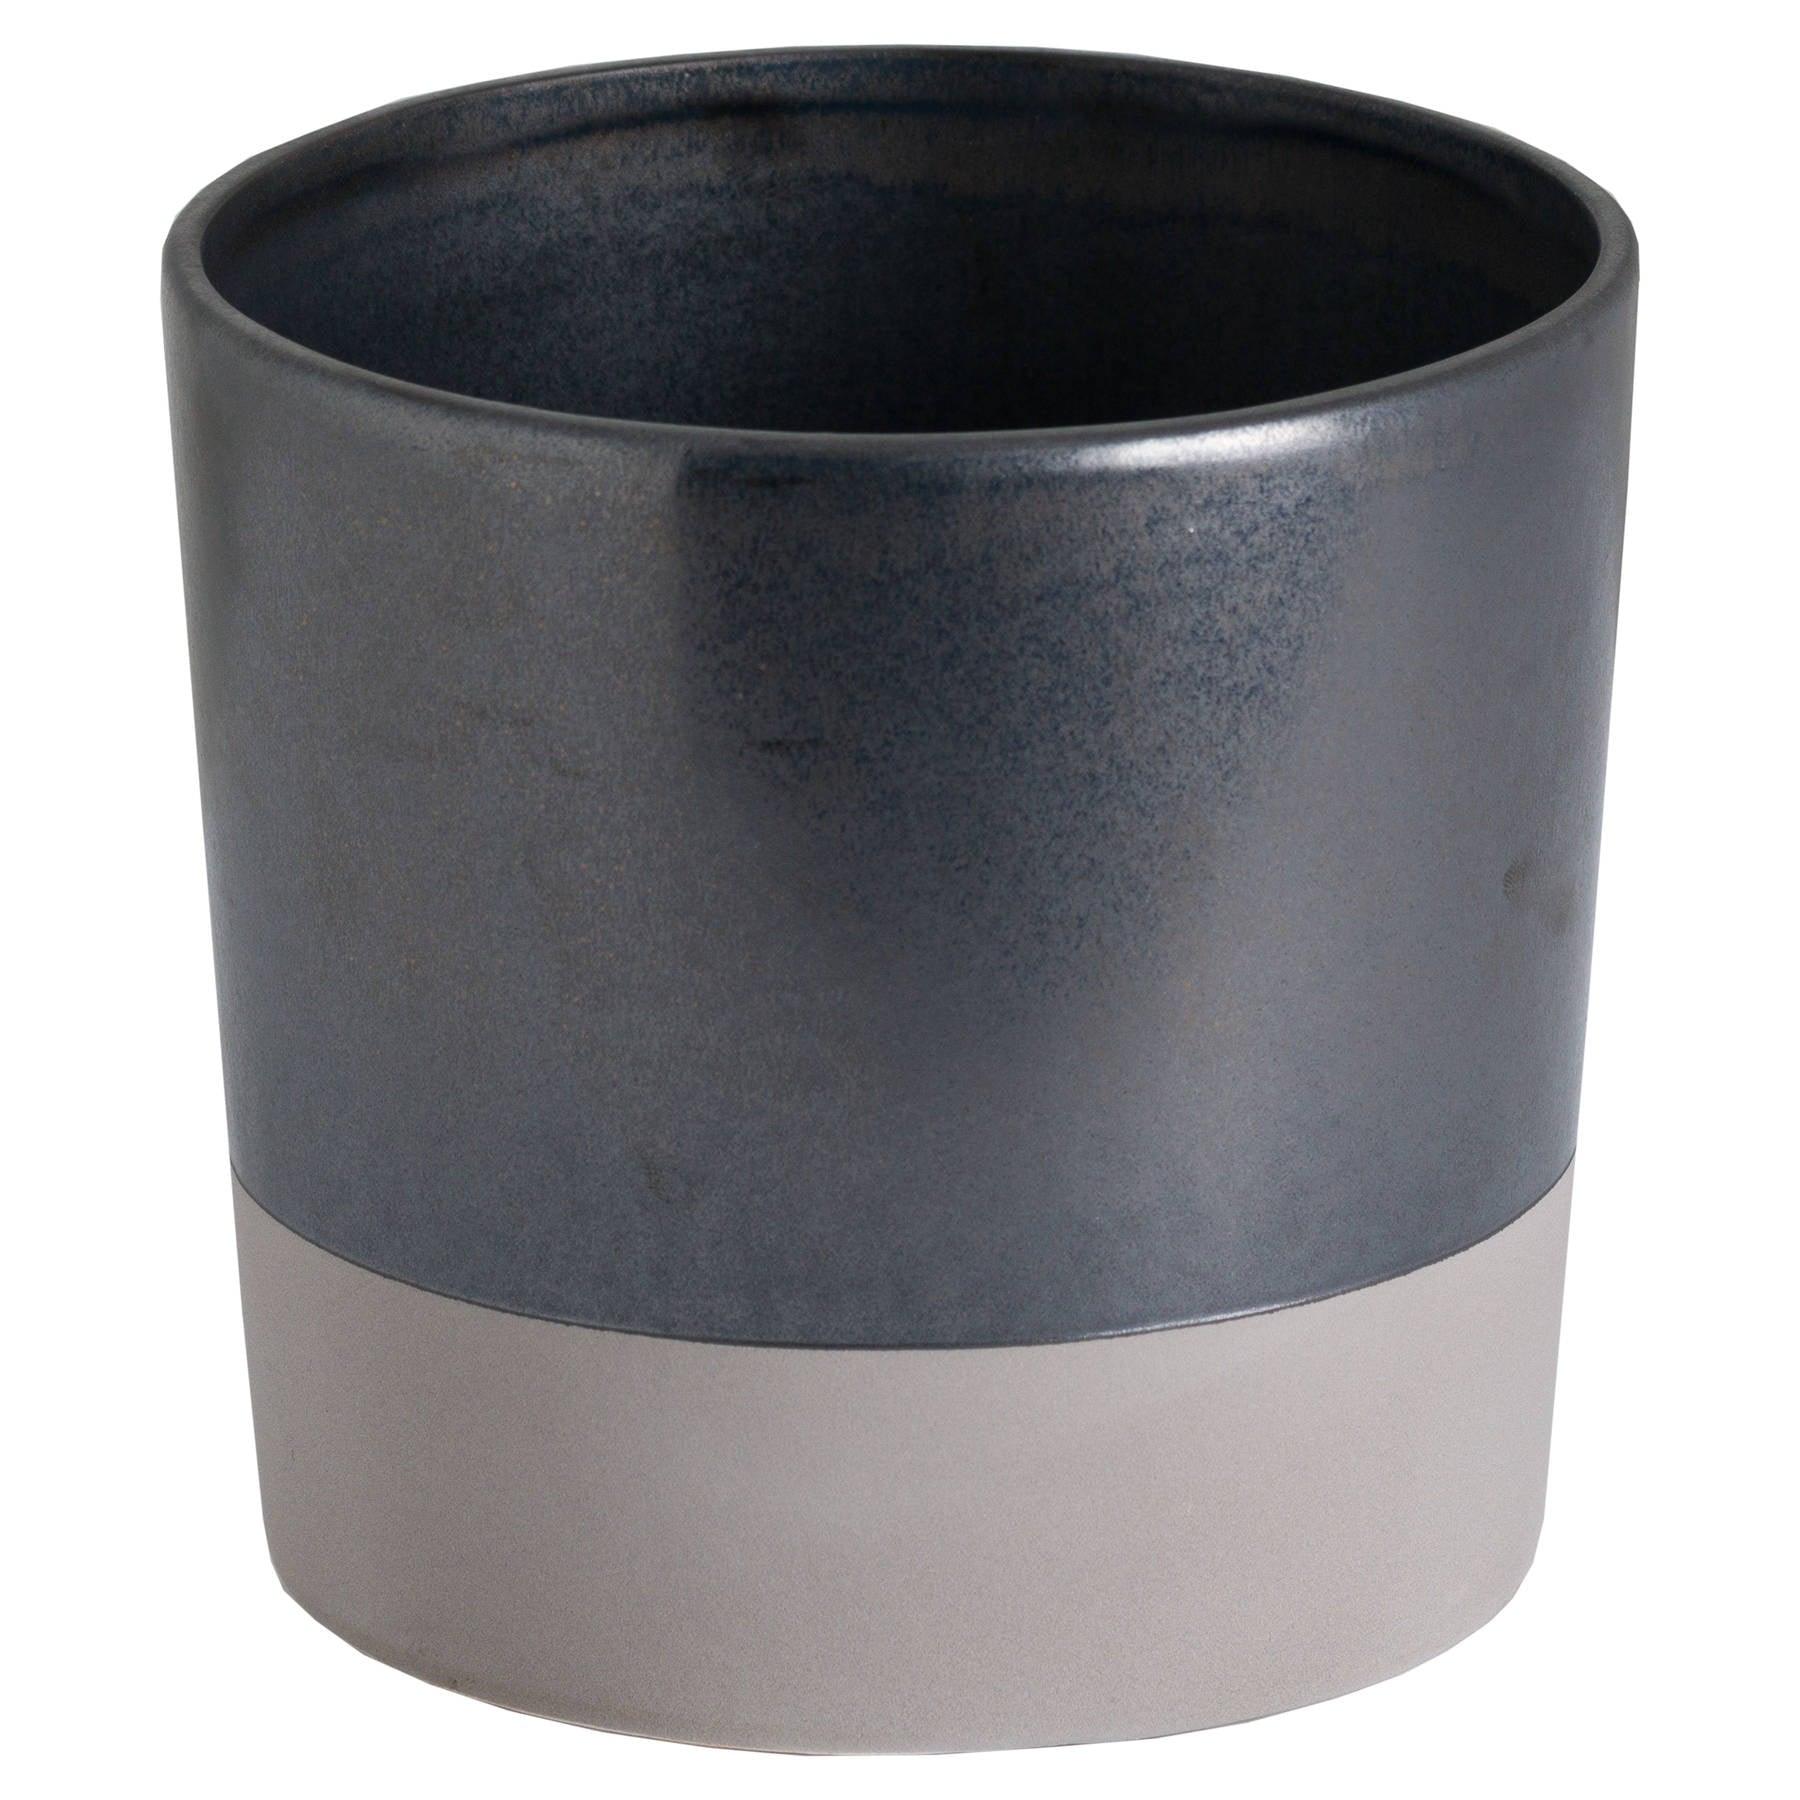 View Large Metallic Grey Ceramic Planter information